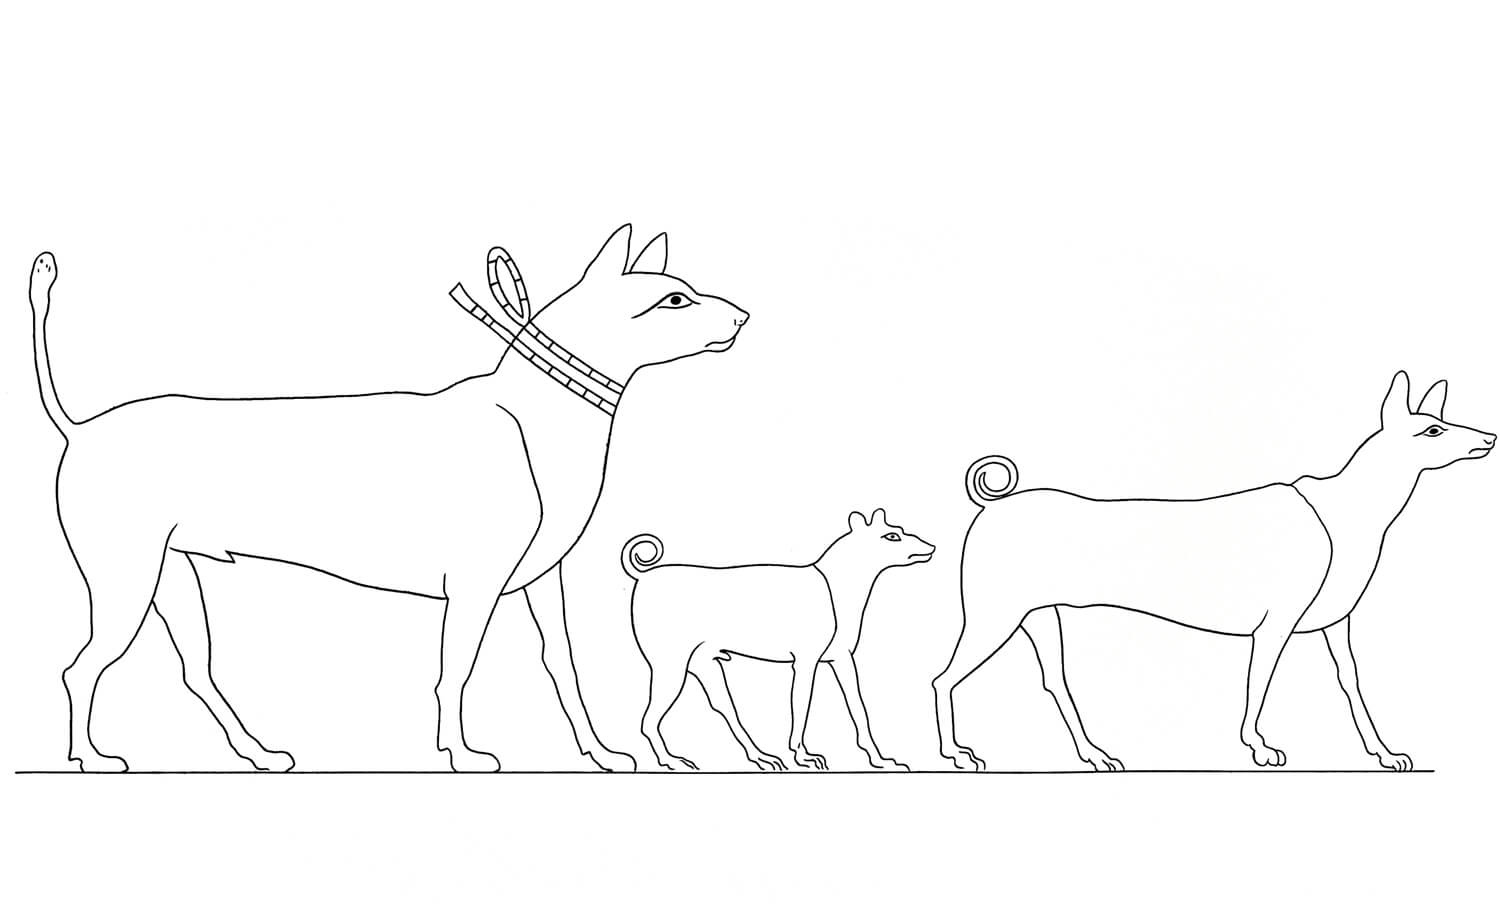 Squadre di antichi egiziani da cani